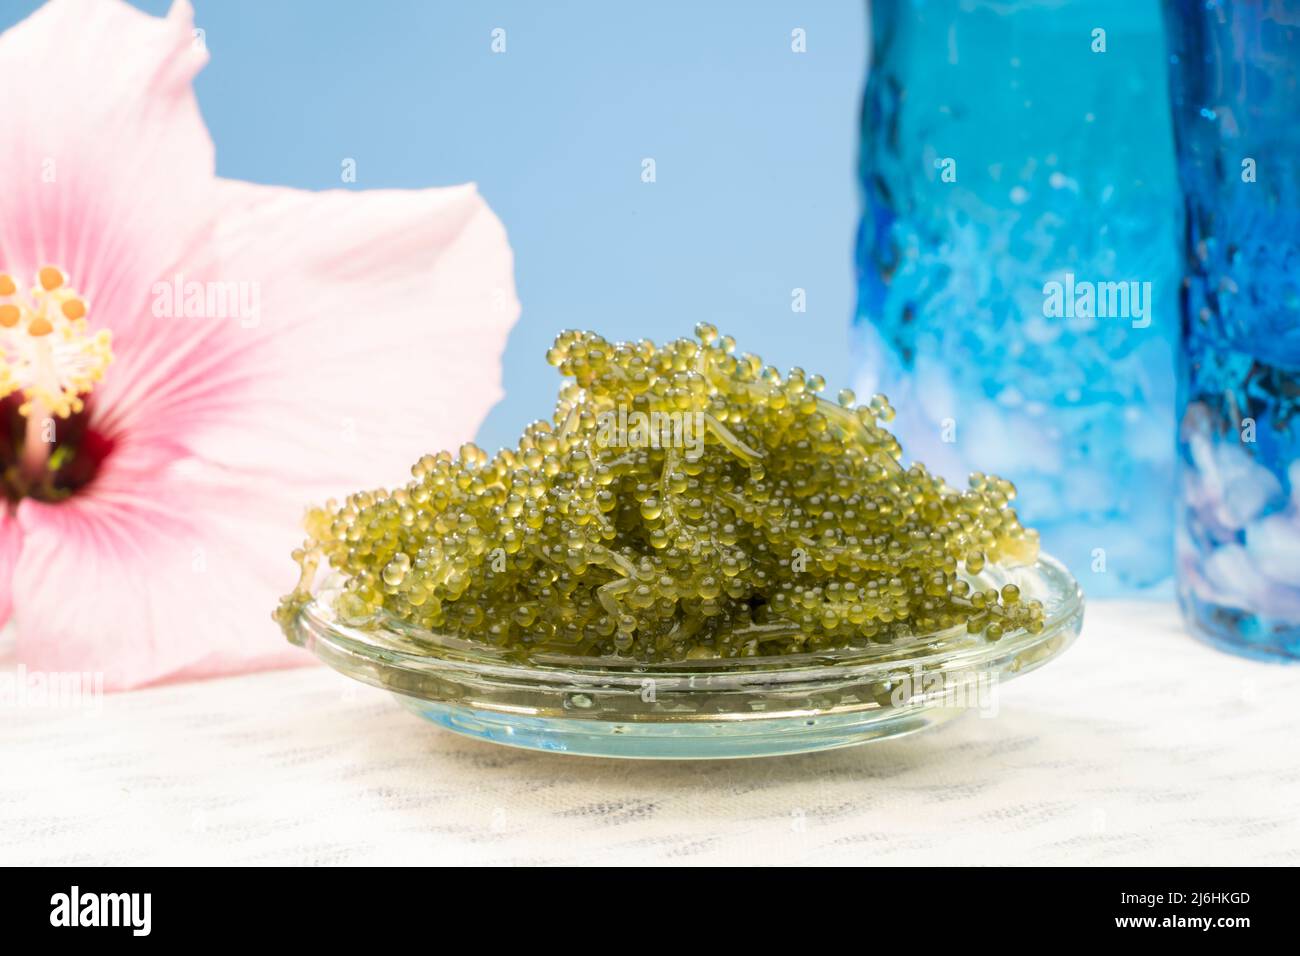 Umibudou o uvas de mar Una popular alga / algas consumidas en Okinawa, Japón y conocido por su puchi puchi popping sensación. Foto de stock